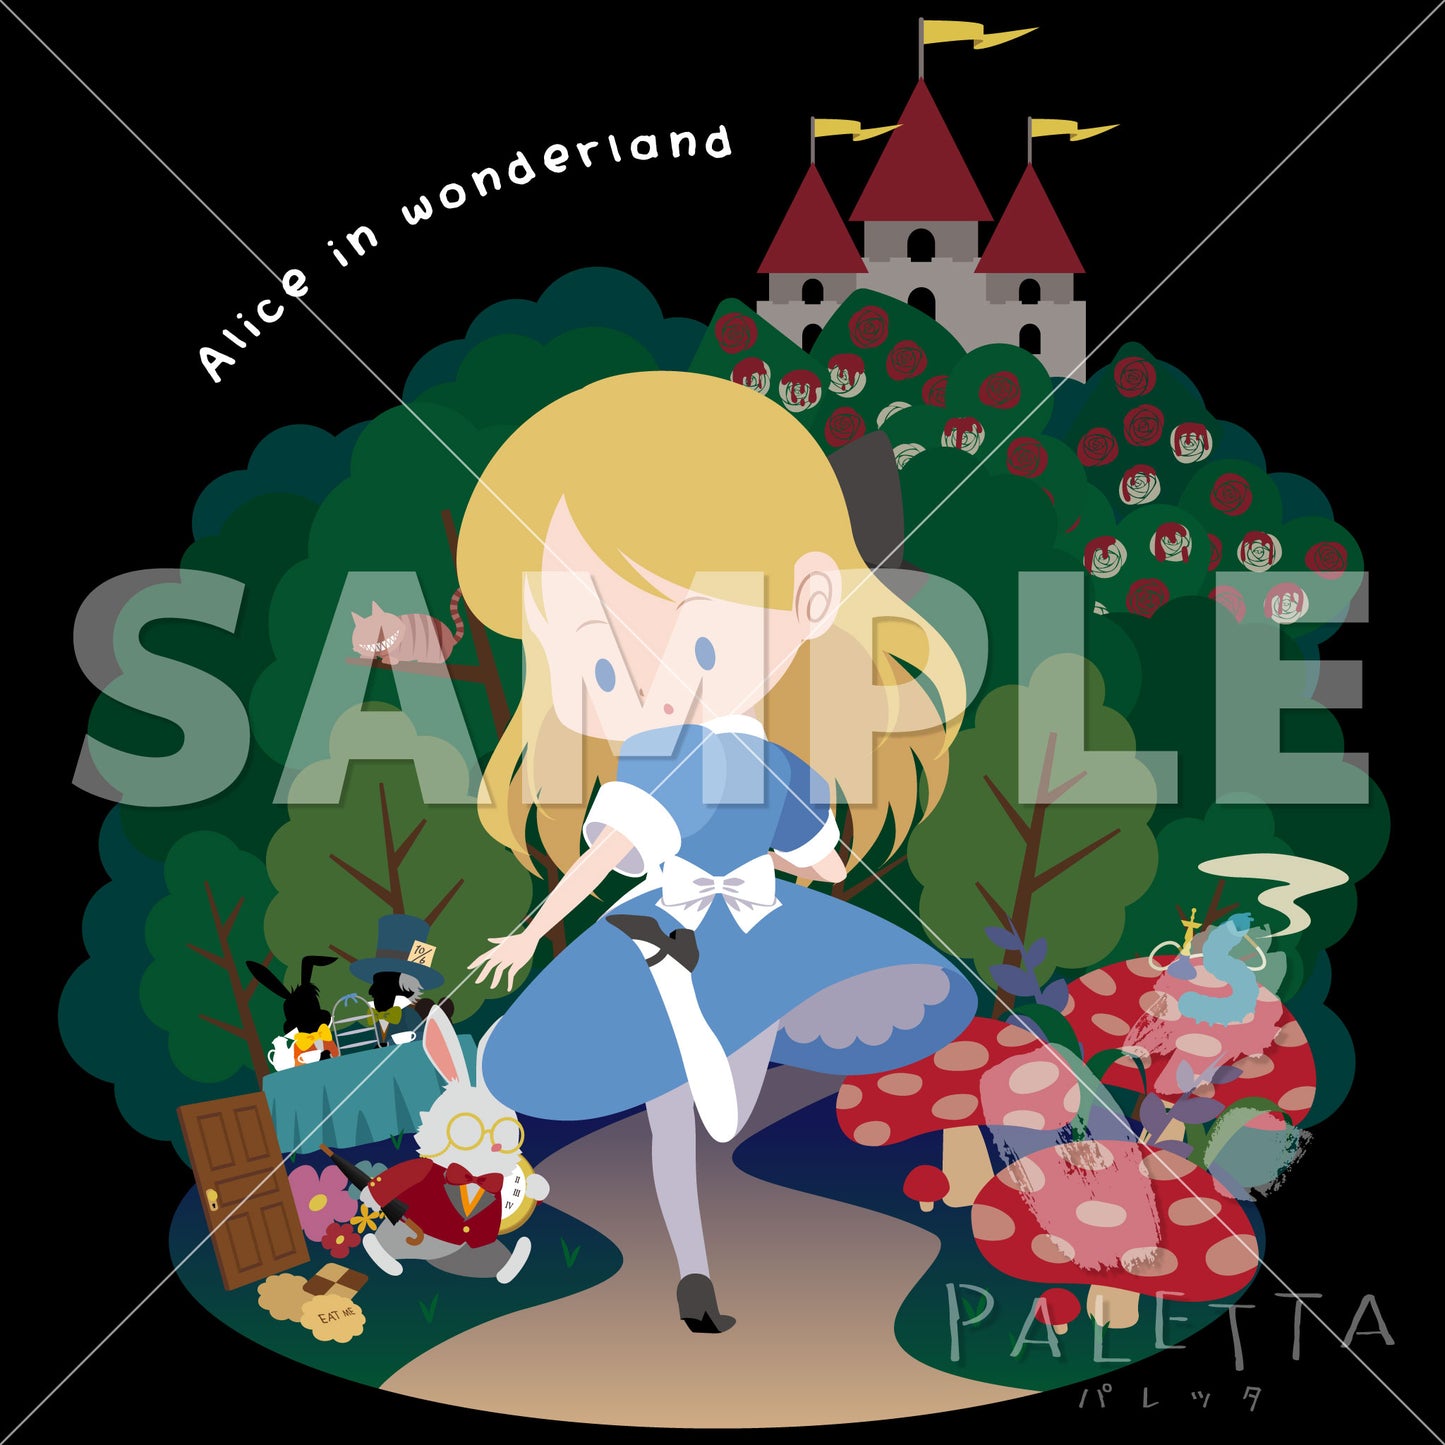 【Paletta】i02-01 Alice in wonderland